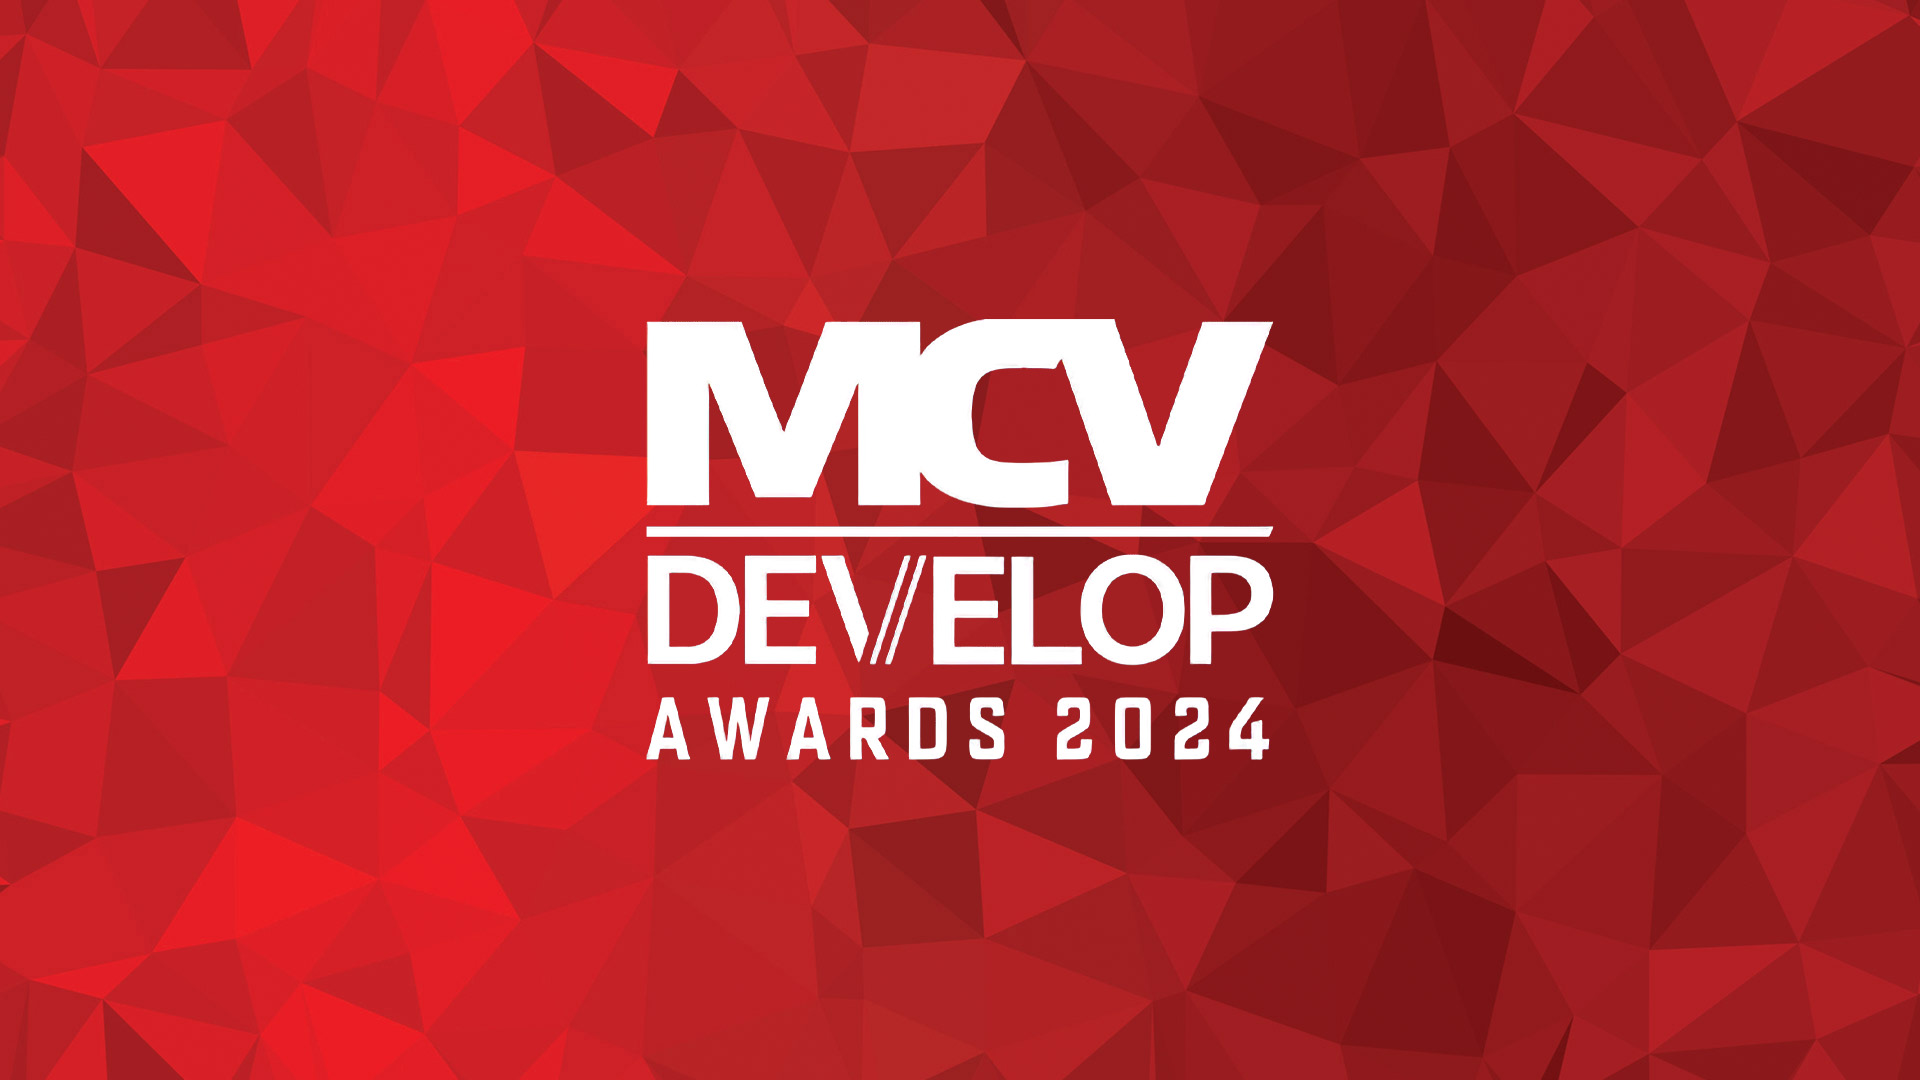 MCV/DEVELOP Awards 2024